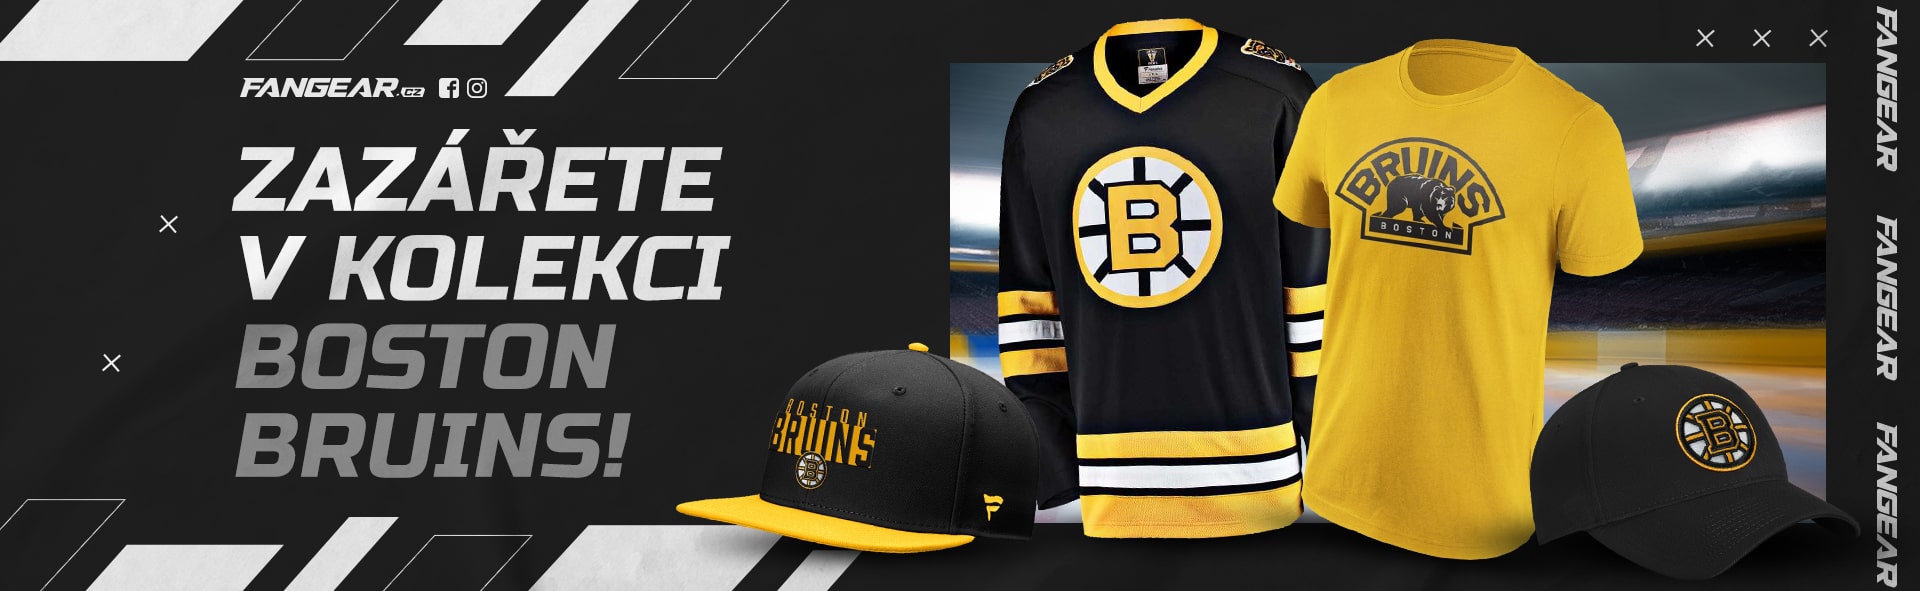 Pasta a Boston Bruins prostě patří k sobě. Fanděte Boston Bruins v nové kolekci - kšiltovky, kulichy, dresy, třička i kšiltovky v široké nabídce.